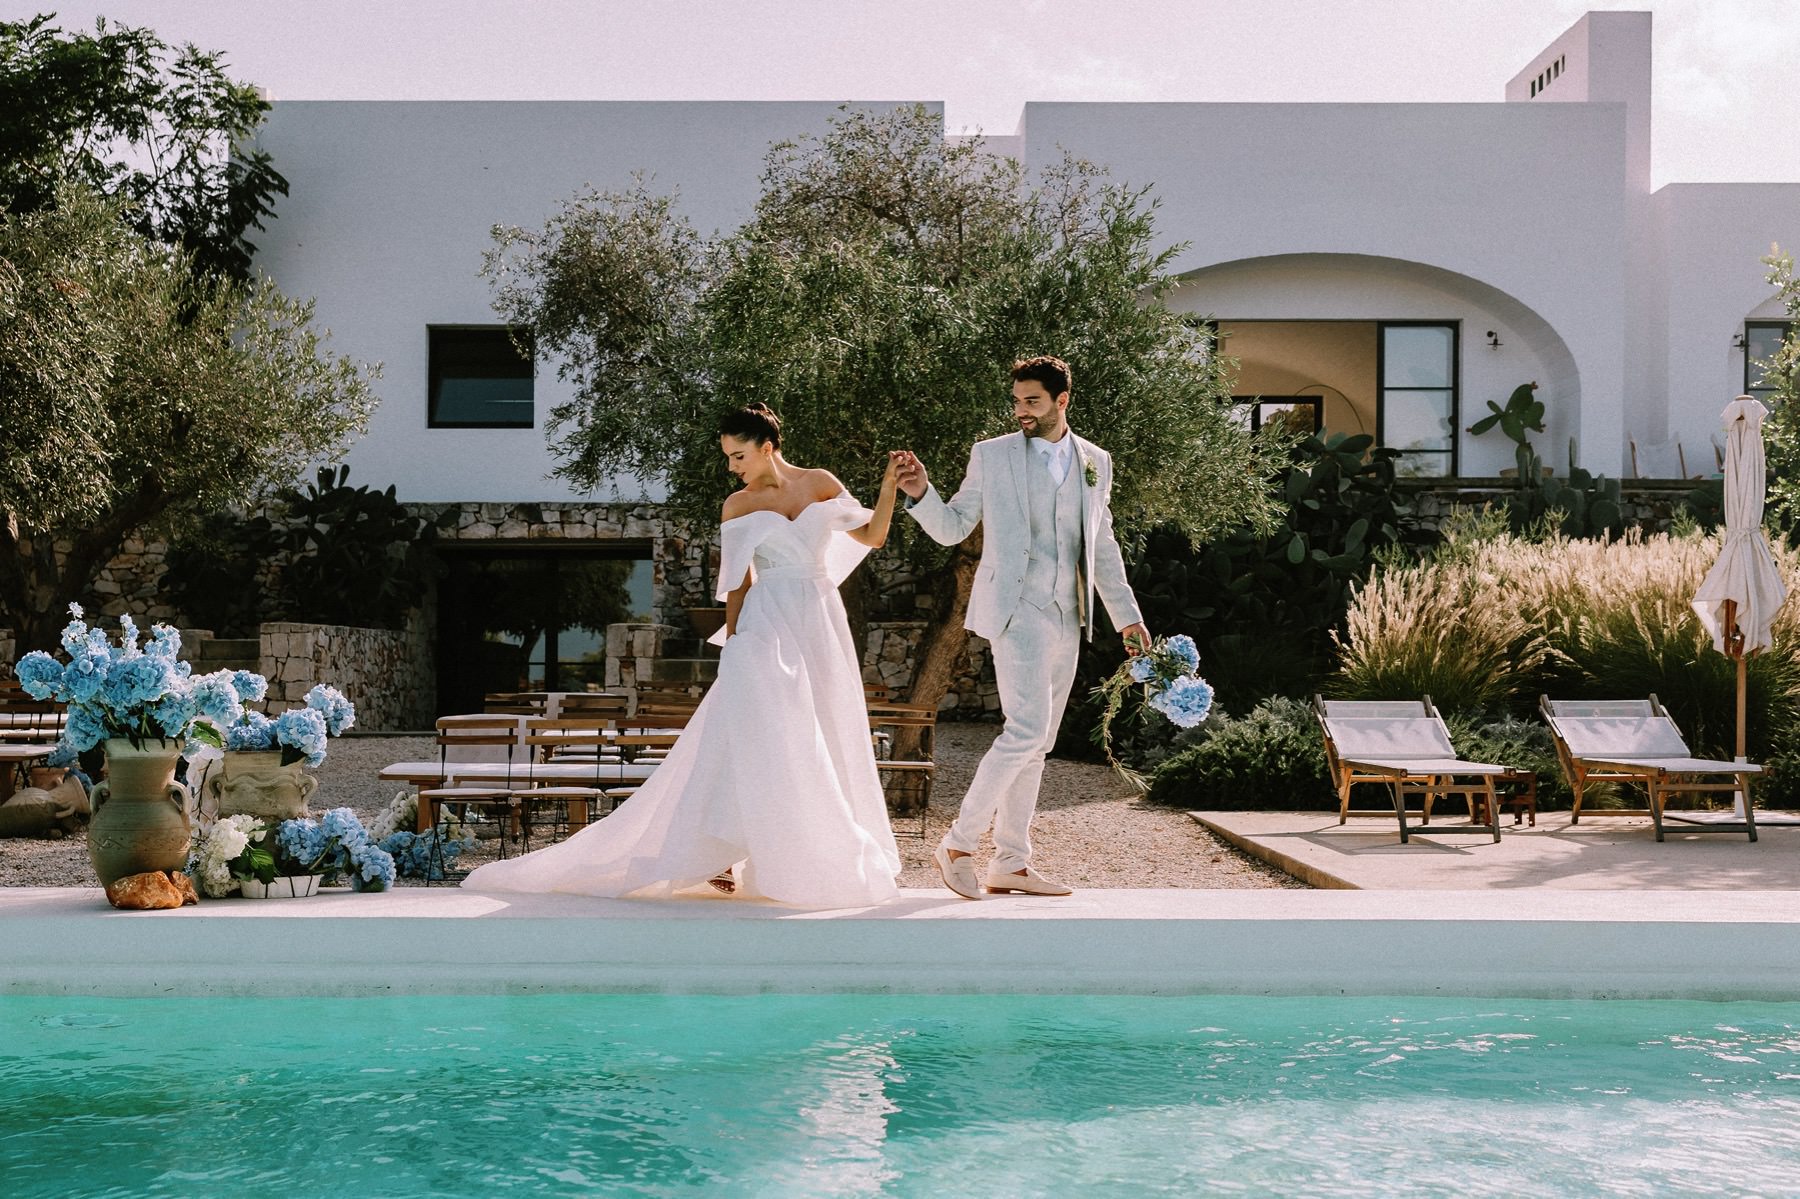 masseria wedding venue with swimming pool in Puglia